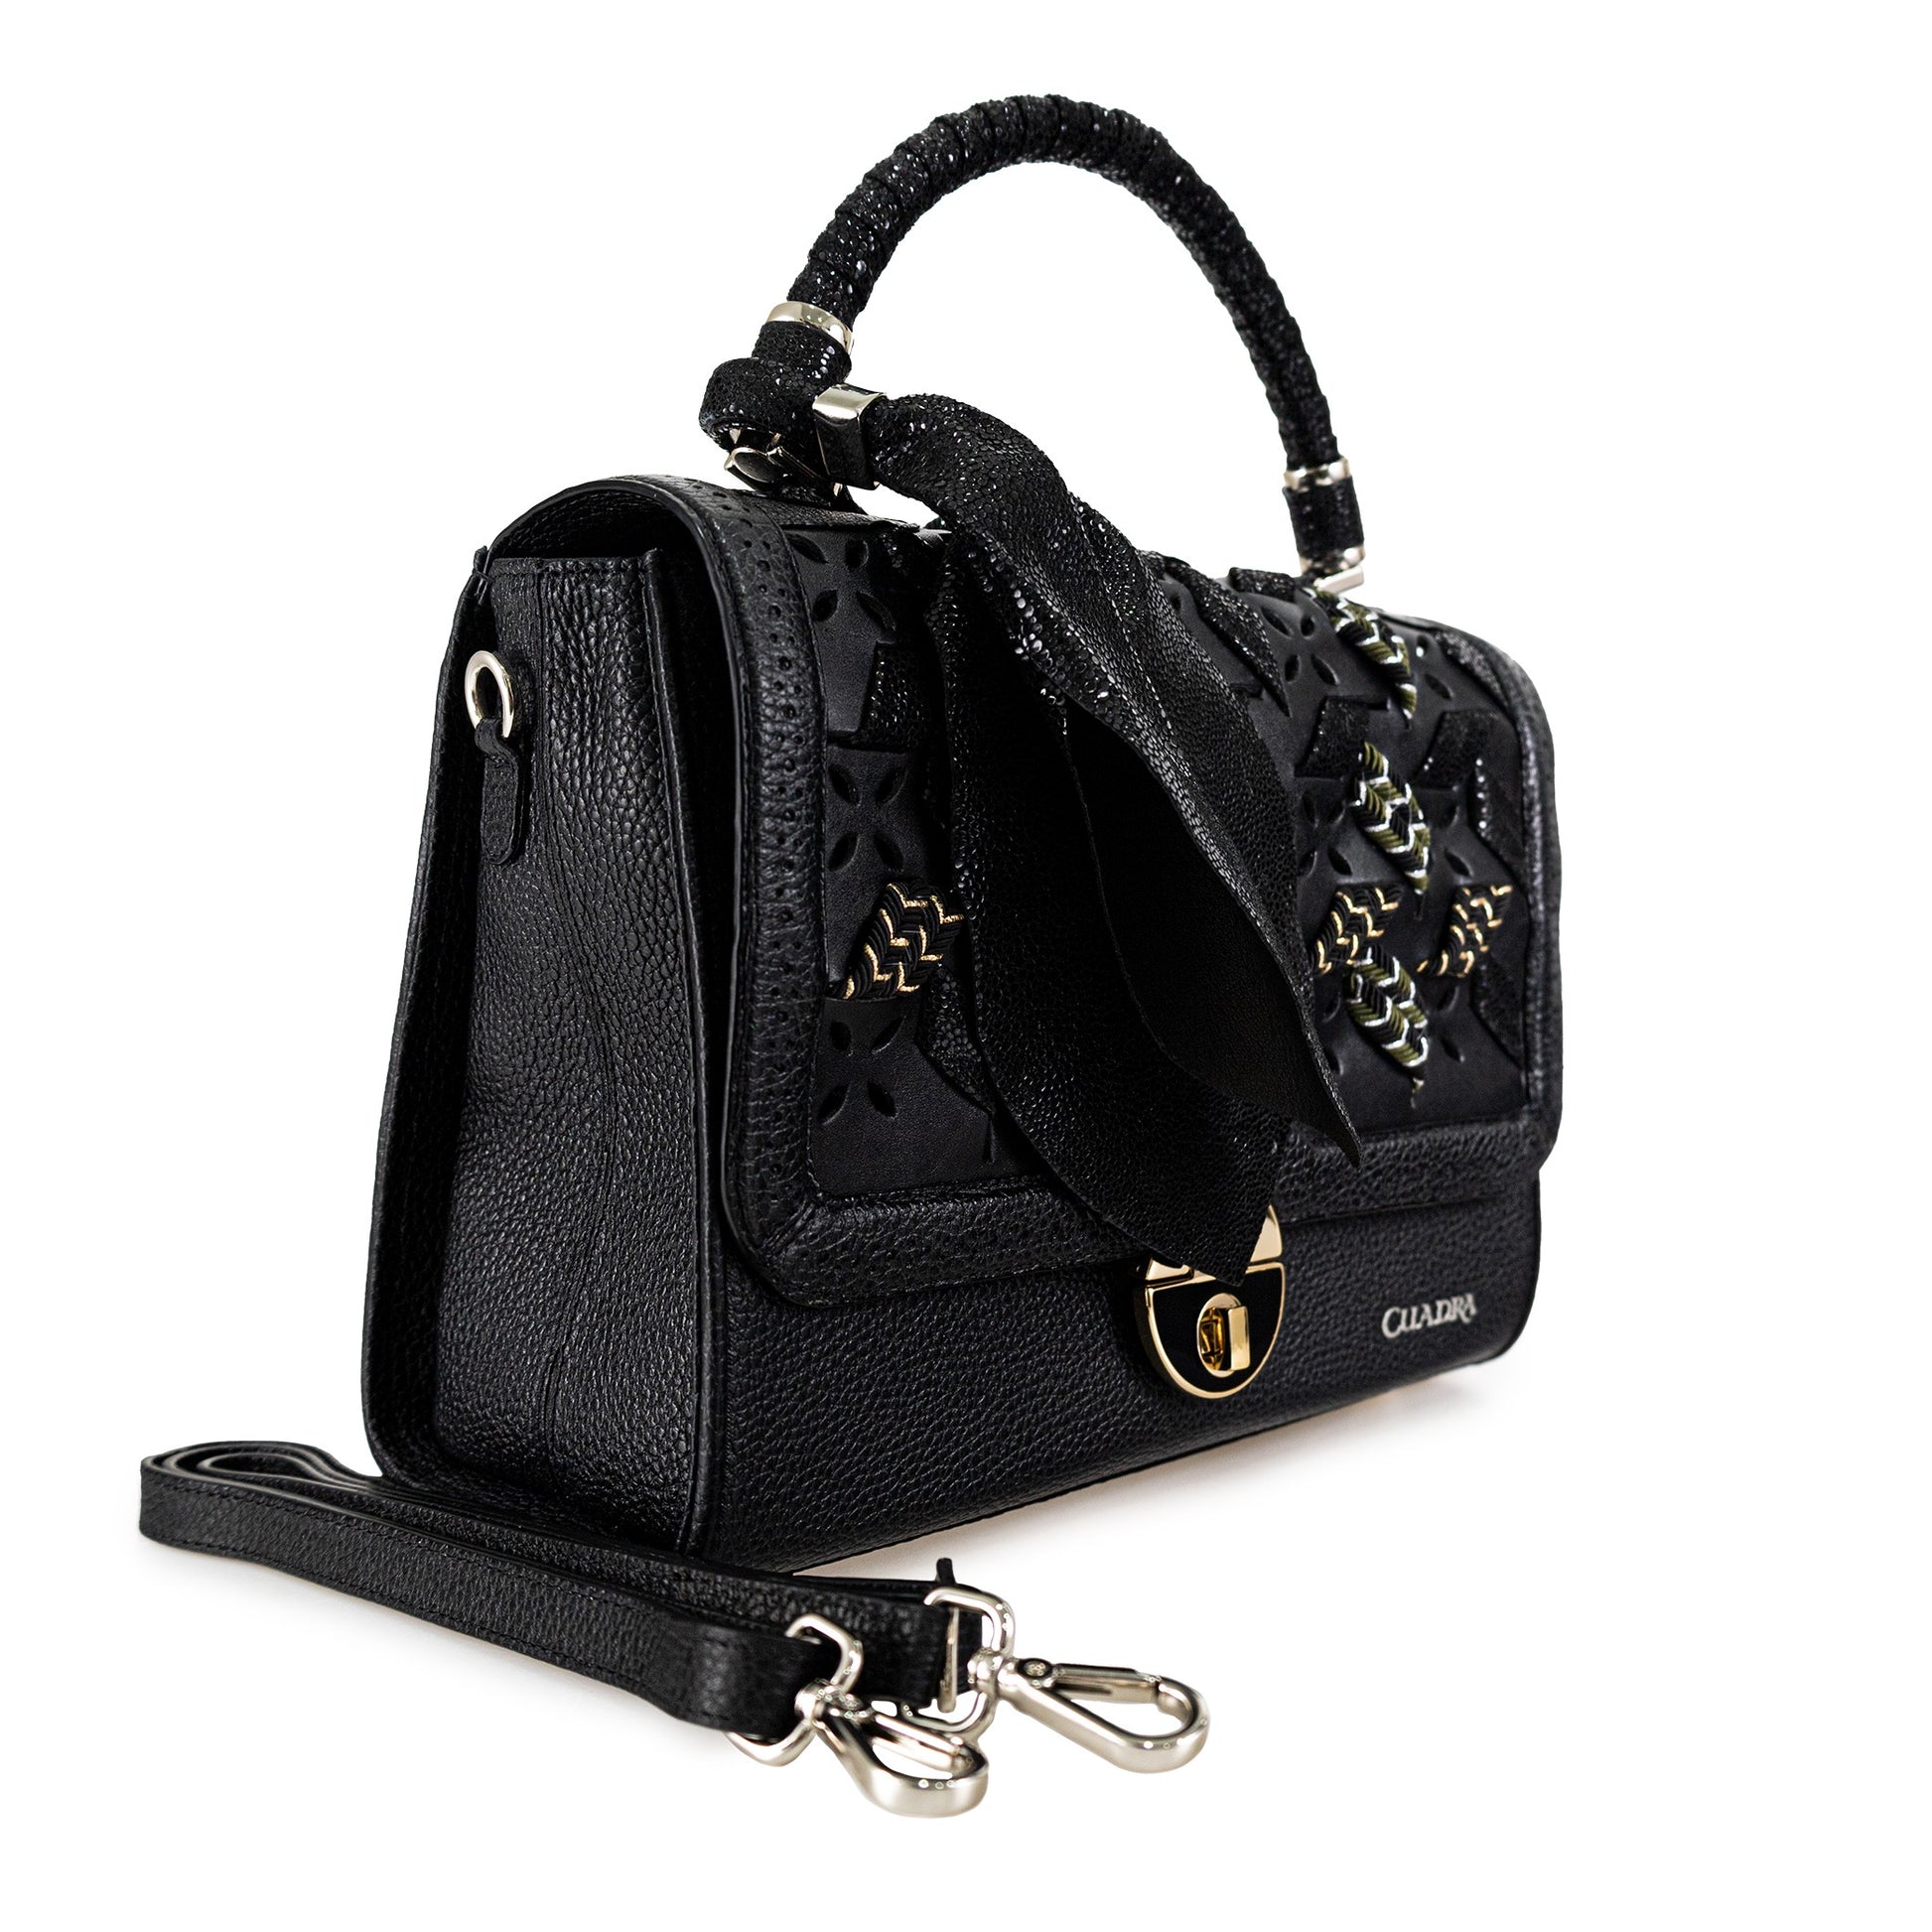 BOD98RS - Cuadra black dress fashion cowhide handbag for women-Kuet.us